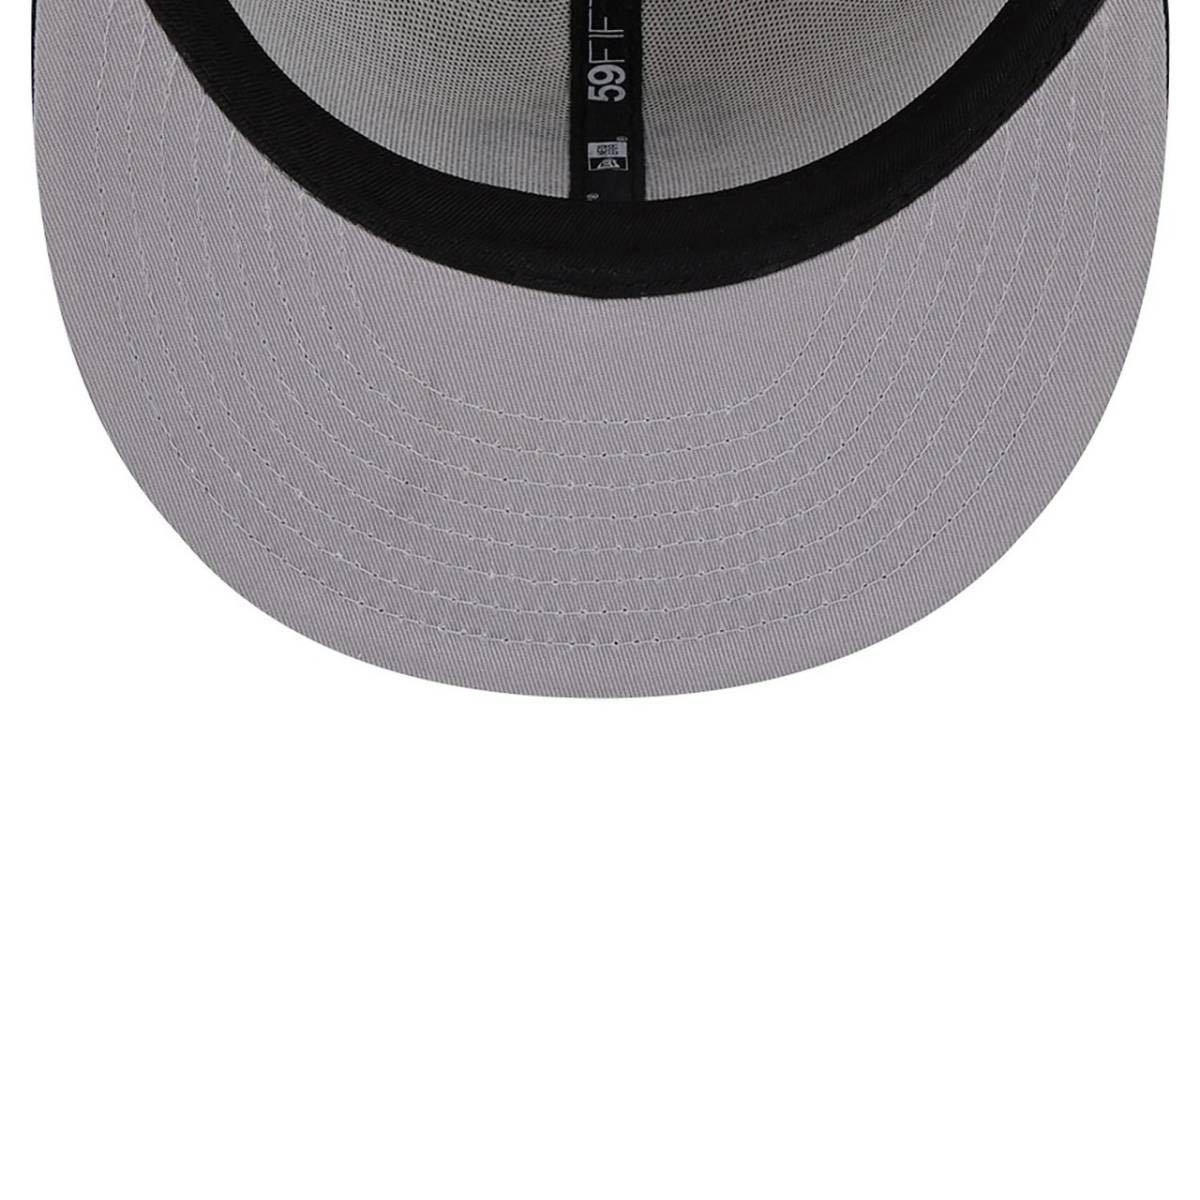 ☆正規品新品☆NEWERA 59FIFTY ニューエラ キャップ 帽子 野球帽 5950シリーズ パドレス ストーン×ブラック ツートーン 62.5cm_画像5